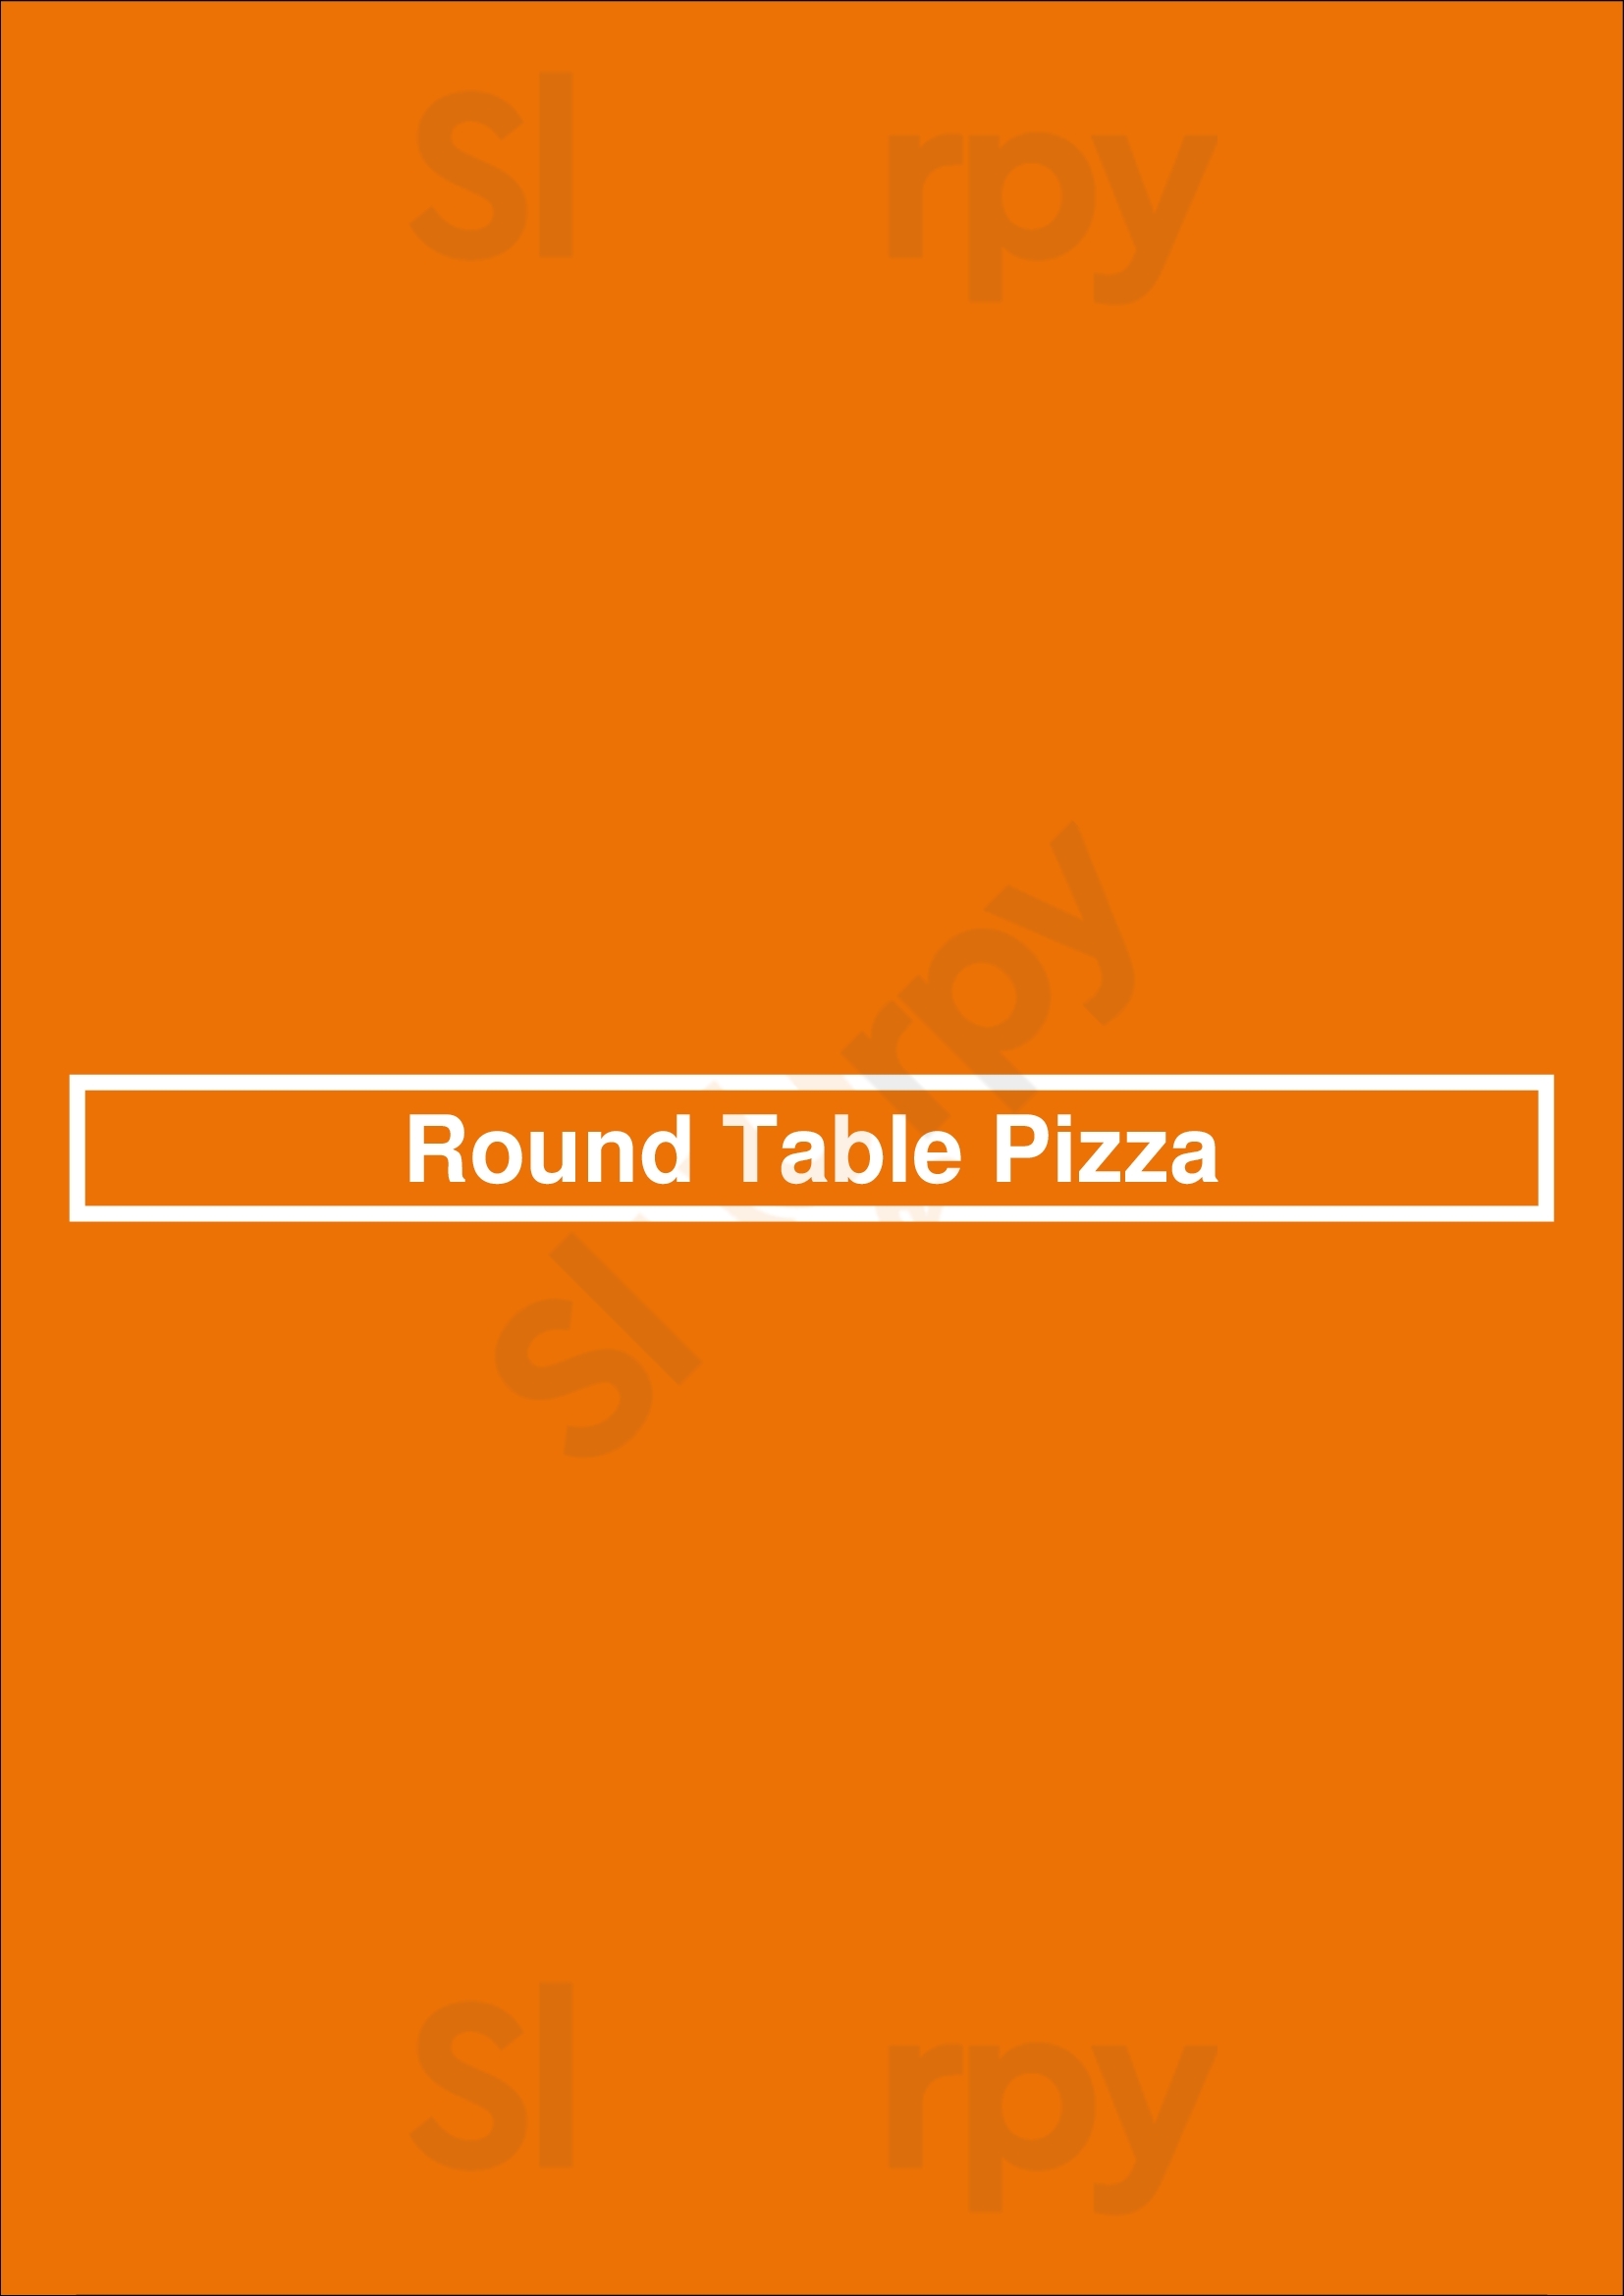 Round Table Pizza San Jose Menu - 1